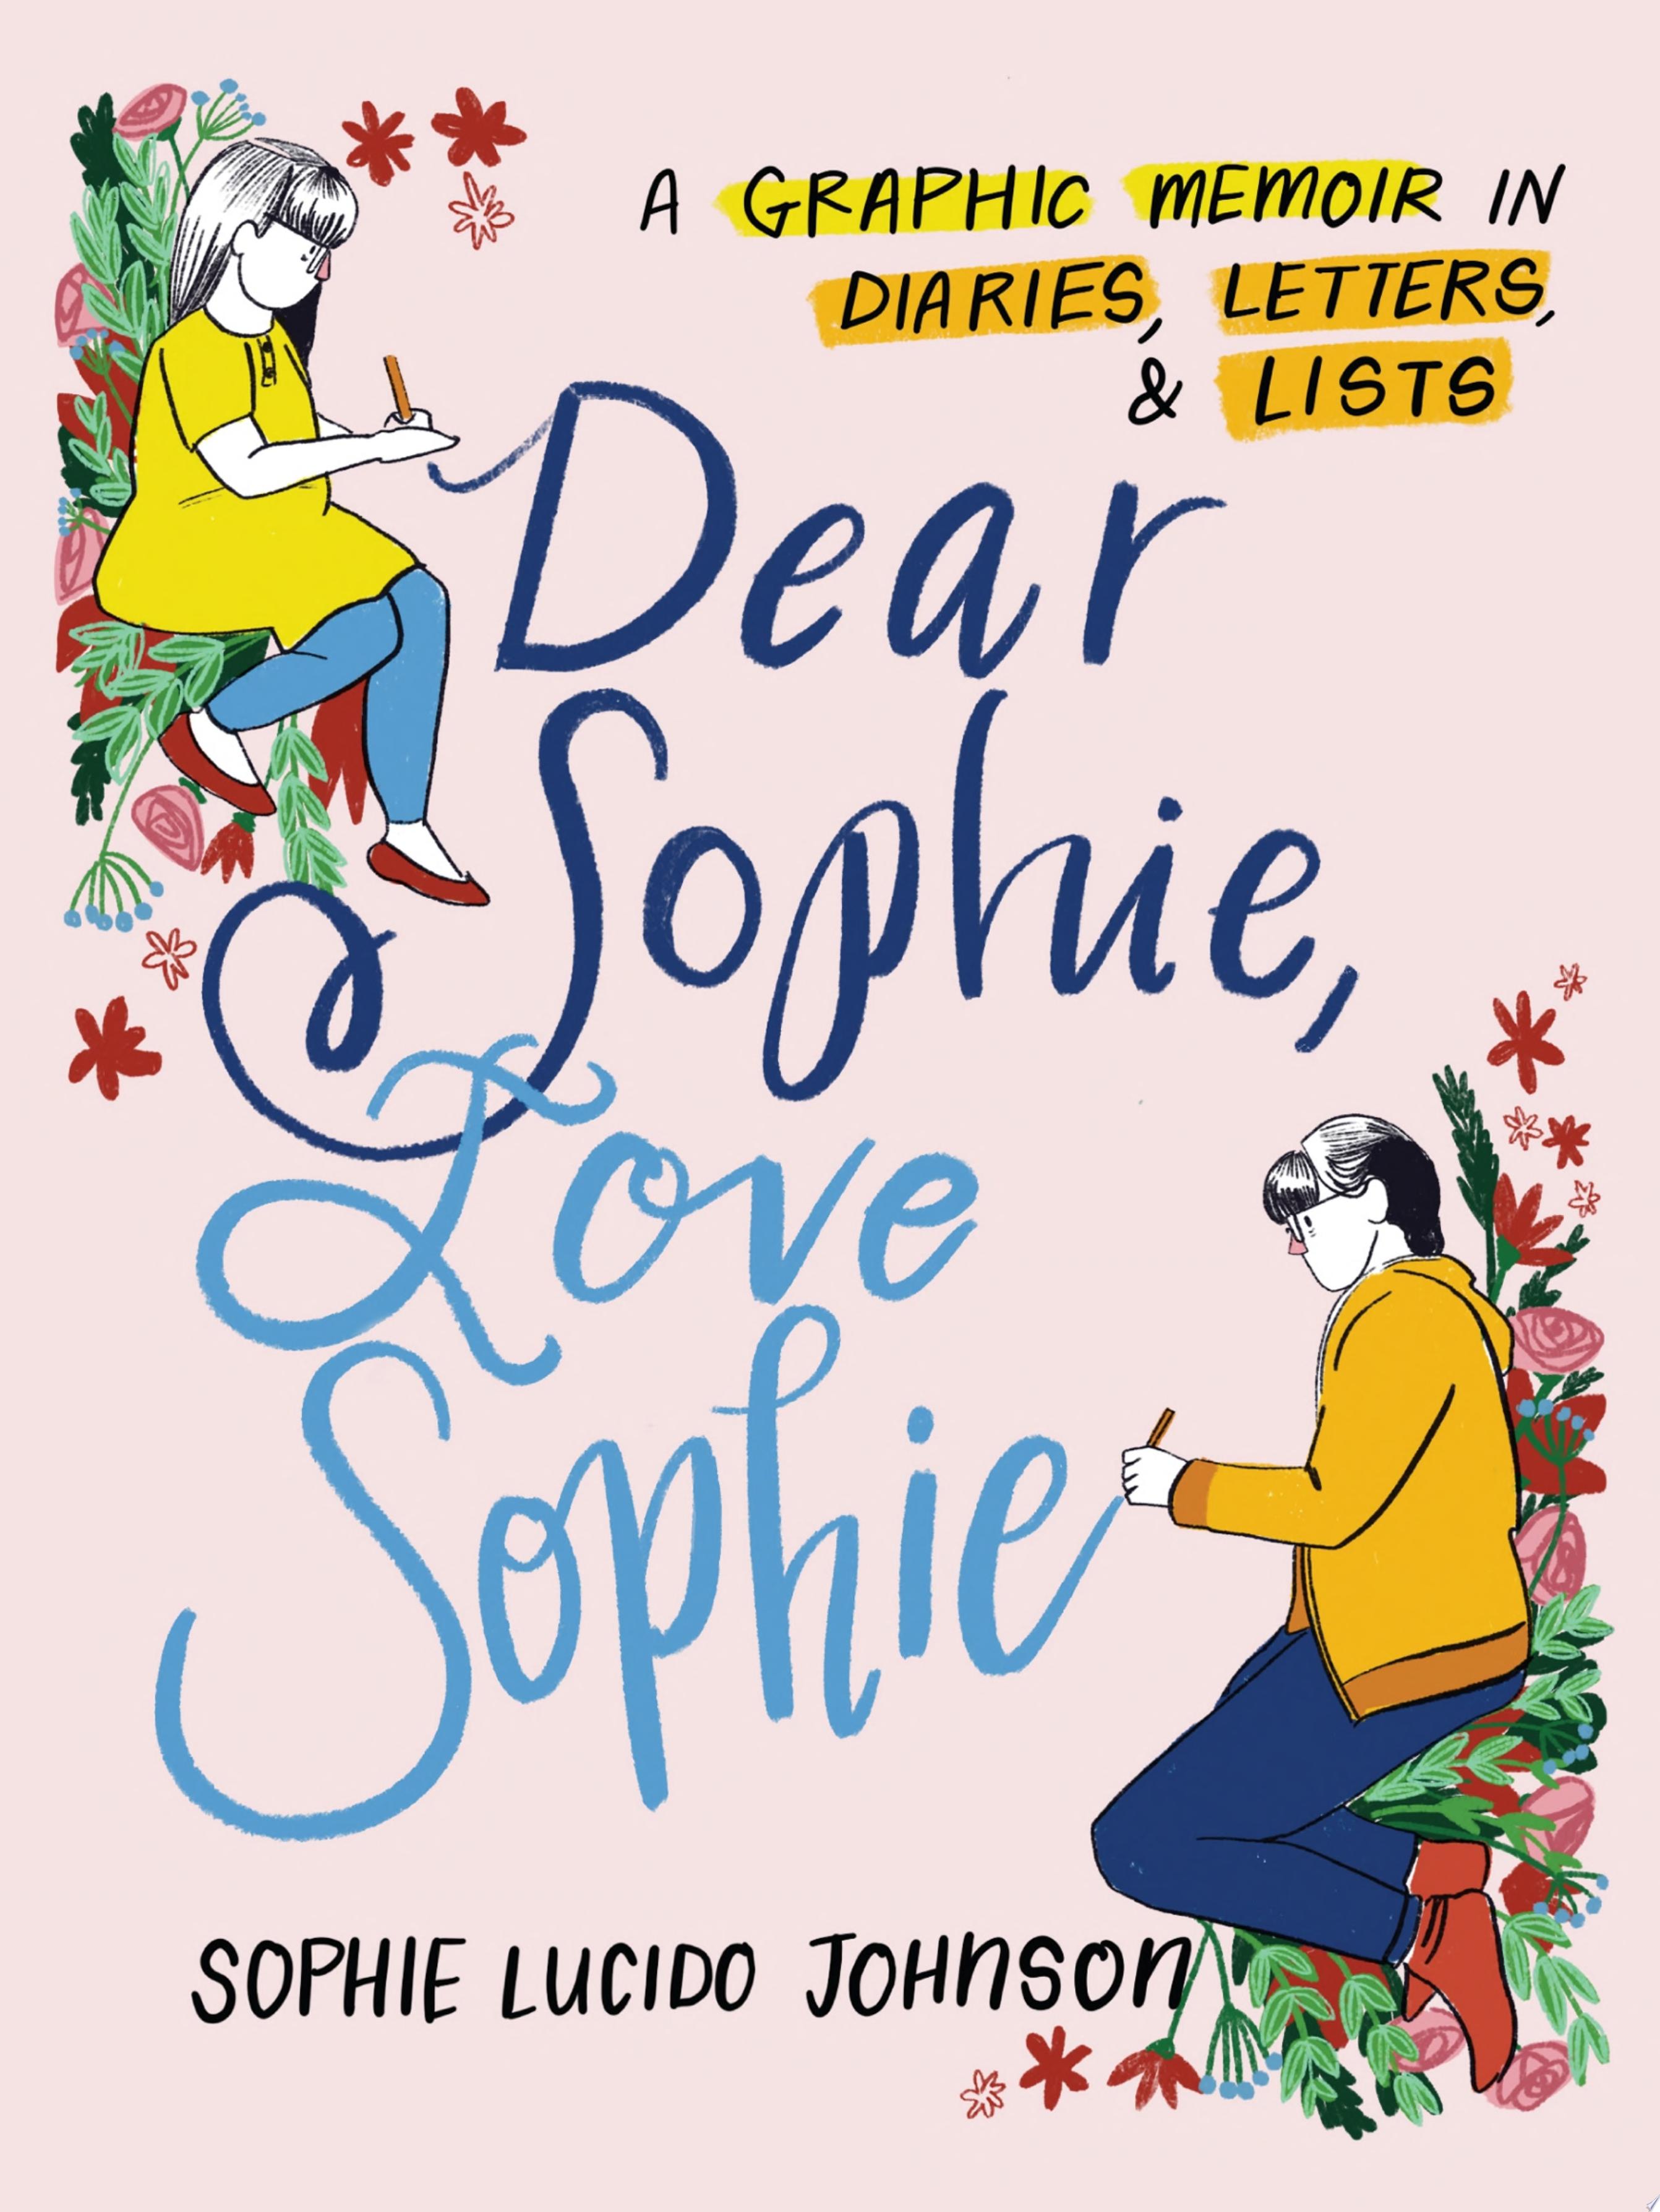 Image for "Dear Sophie, Love Sophie"